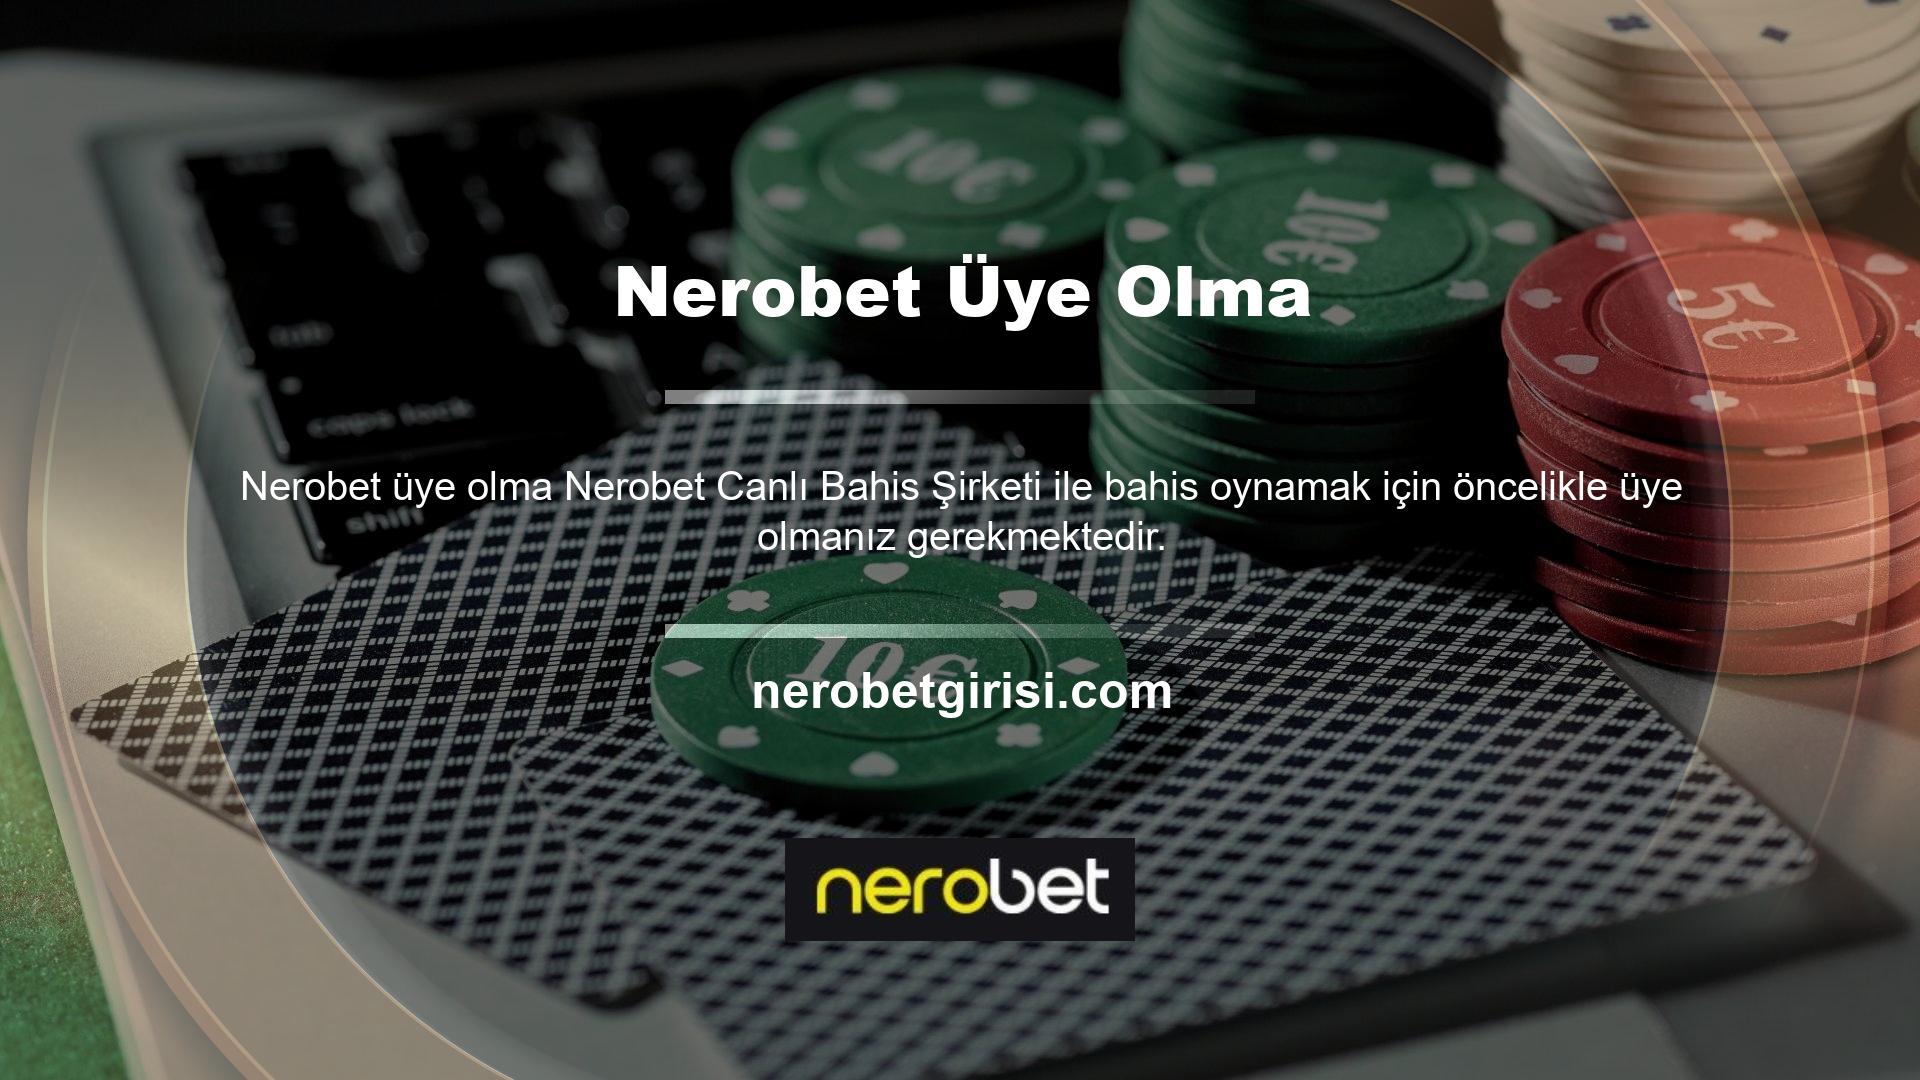 Nerobet kayıt işlemini başarıyla tamamladığınızda ilk yatırımınızdan itibaren casino oyunlarına katılabileceksiniz